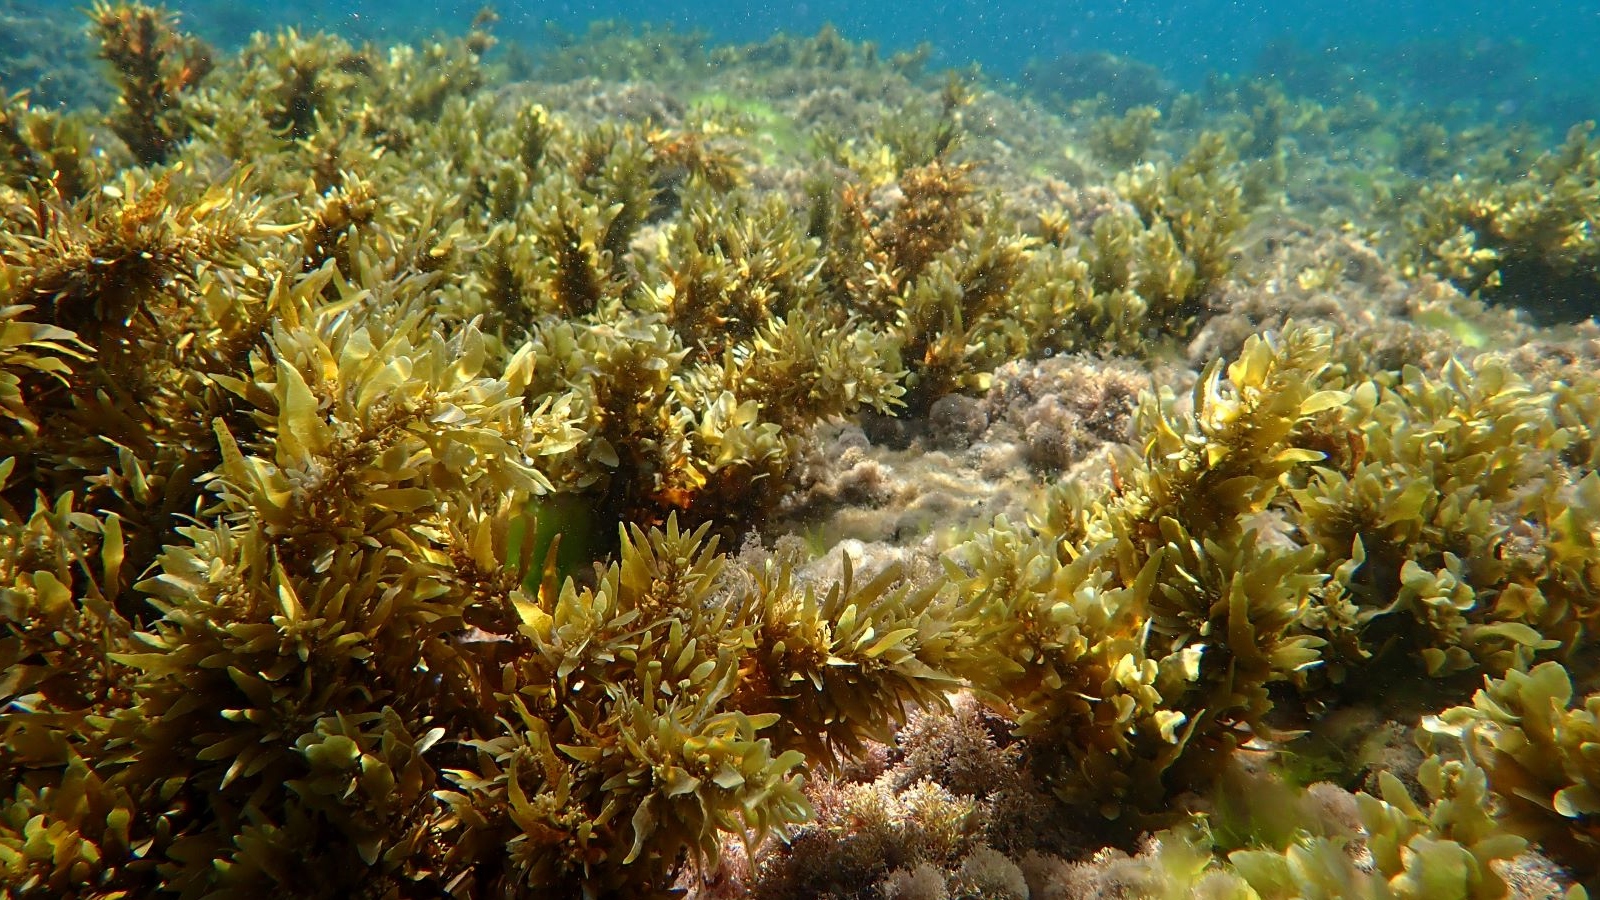 Underwater seaweed garden, Bat Yam. Photo by Doron Ashkenazi